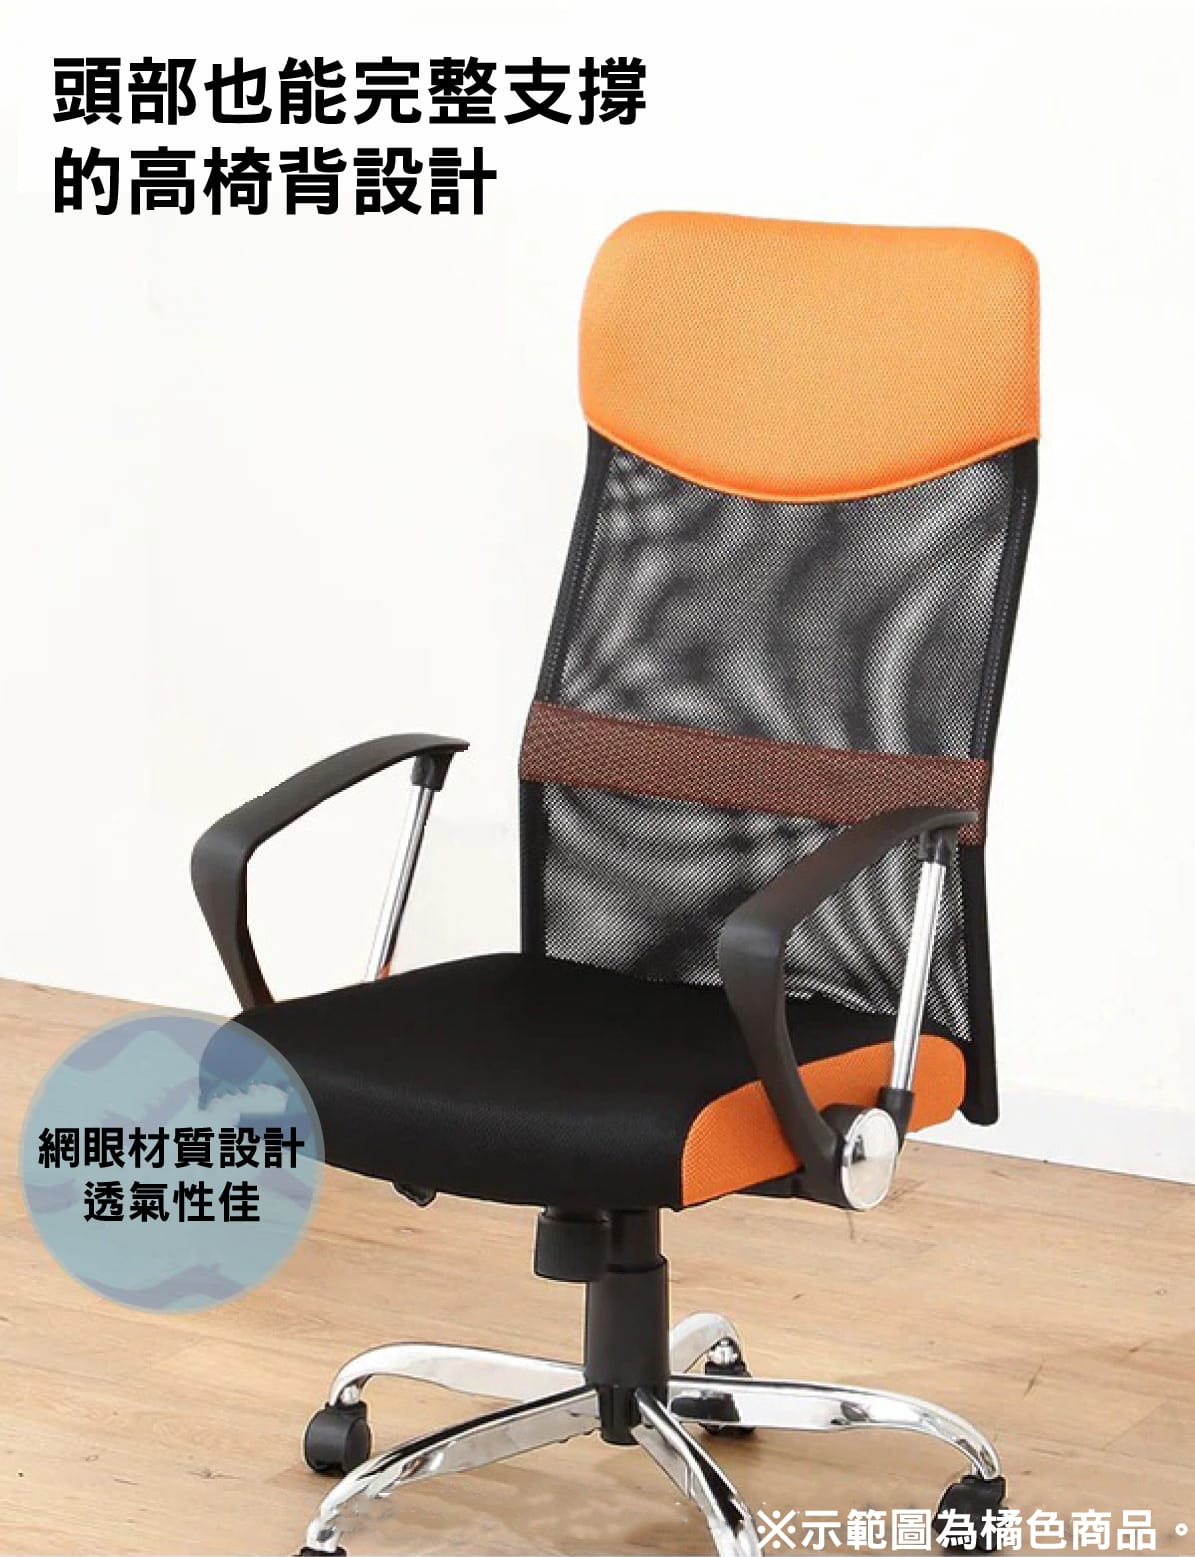 頭部也能完整支撐的高椅背設計網眼材質設計透氣性佳※示範圖為橘色商品